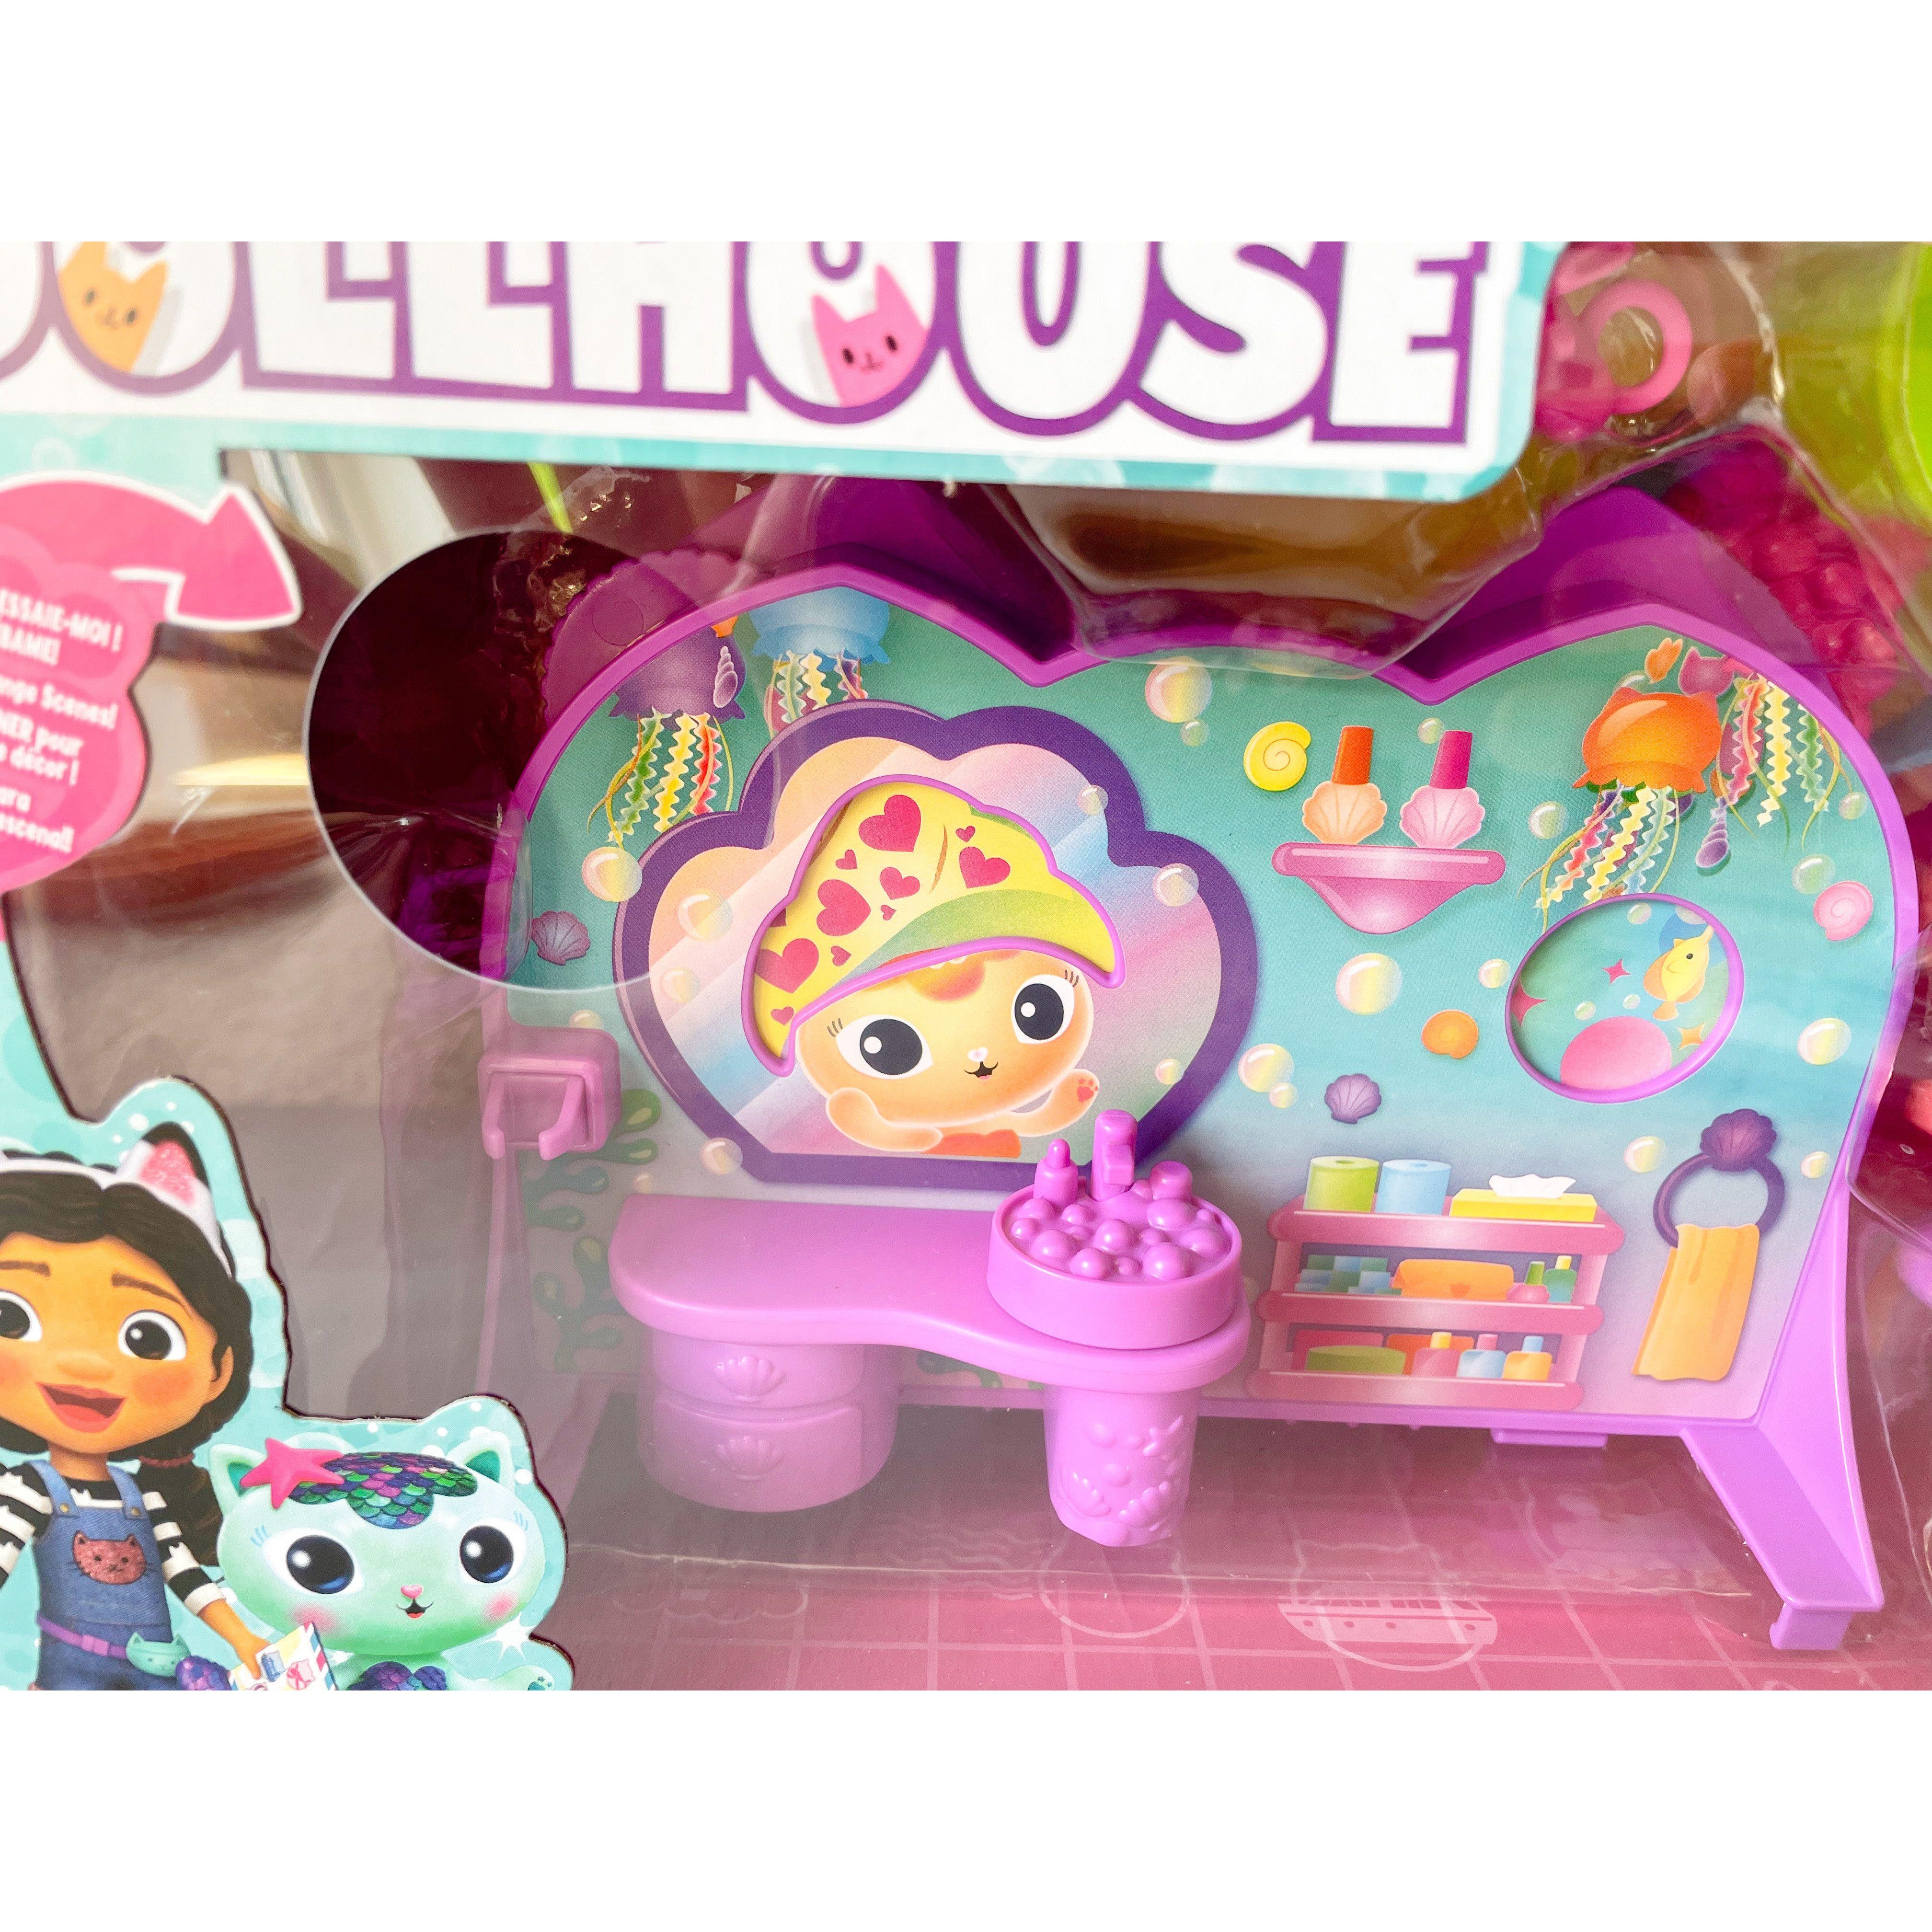 Gabby's Dollhouse - on The Go Travel Set